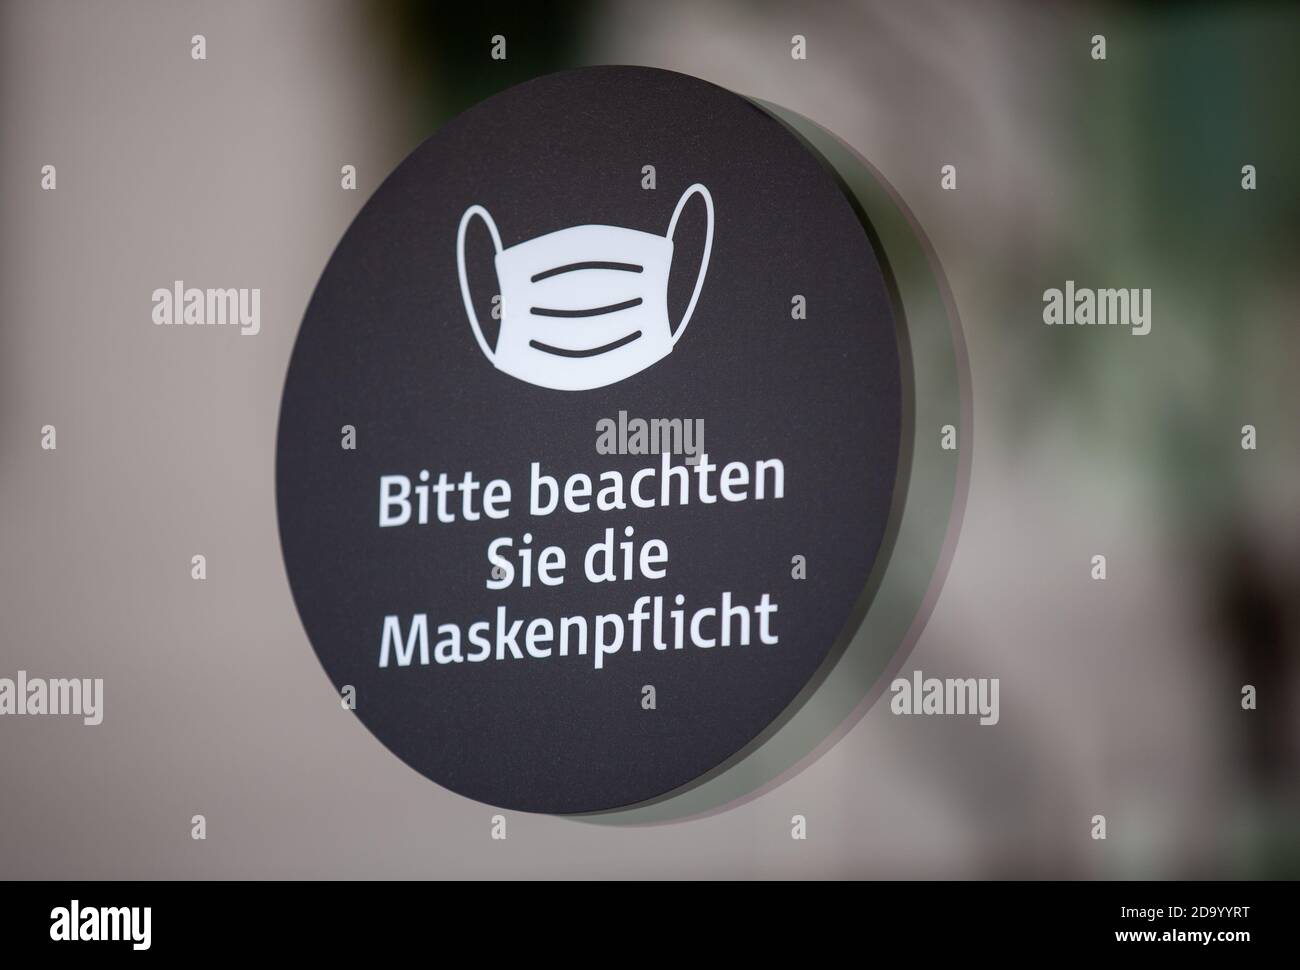 Info sign in una città tedesca con testo tedesco. Bitte beachten Sie die Maskenpflicht. Si prega di notare il requisito della maschera. Foto Stock